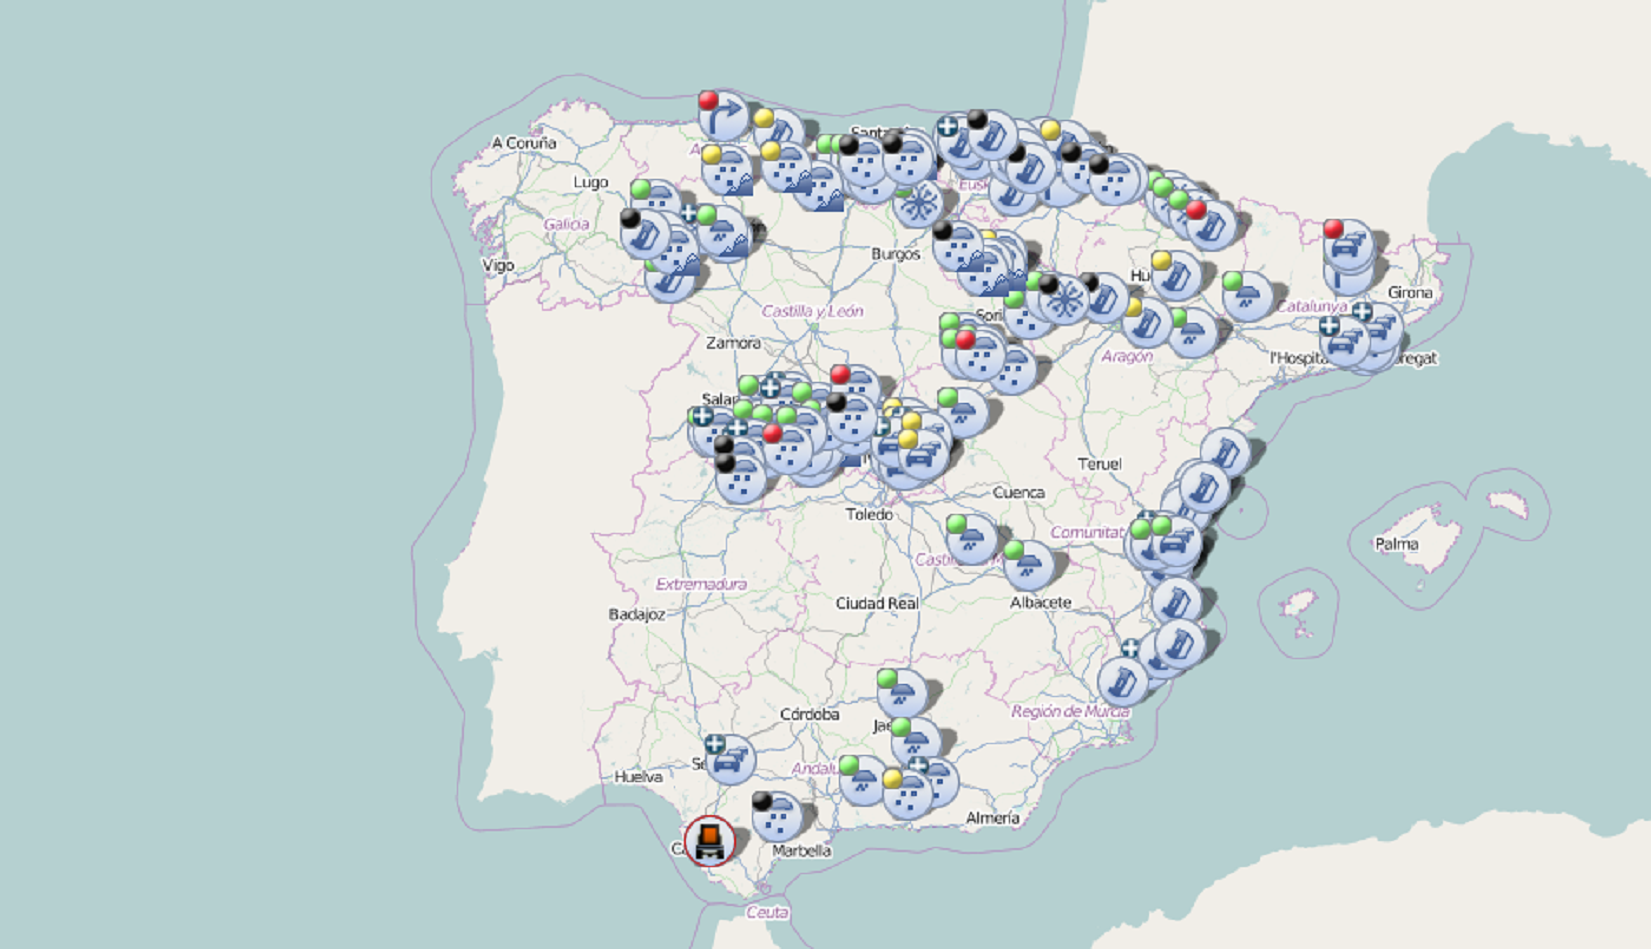 La DGT cambia el color del mapa después de pintar Catalunya como un estado independiente